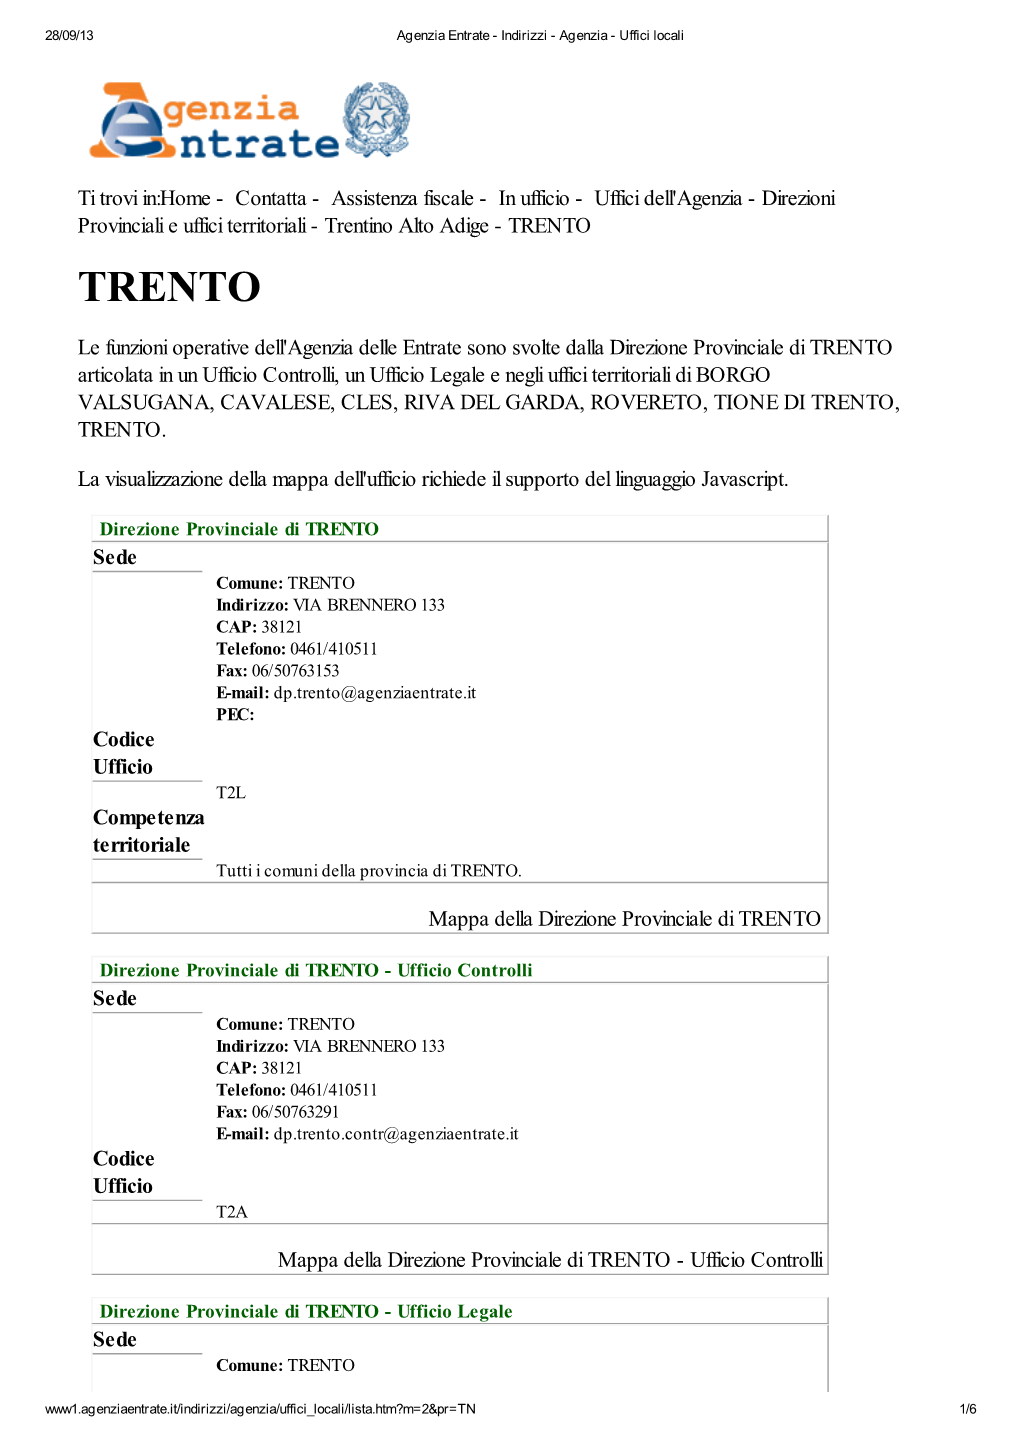 Codici Uffici Agenzia Delle Entrate Della Provincia Di Trento